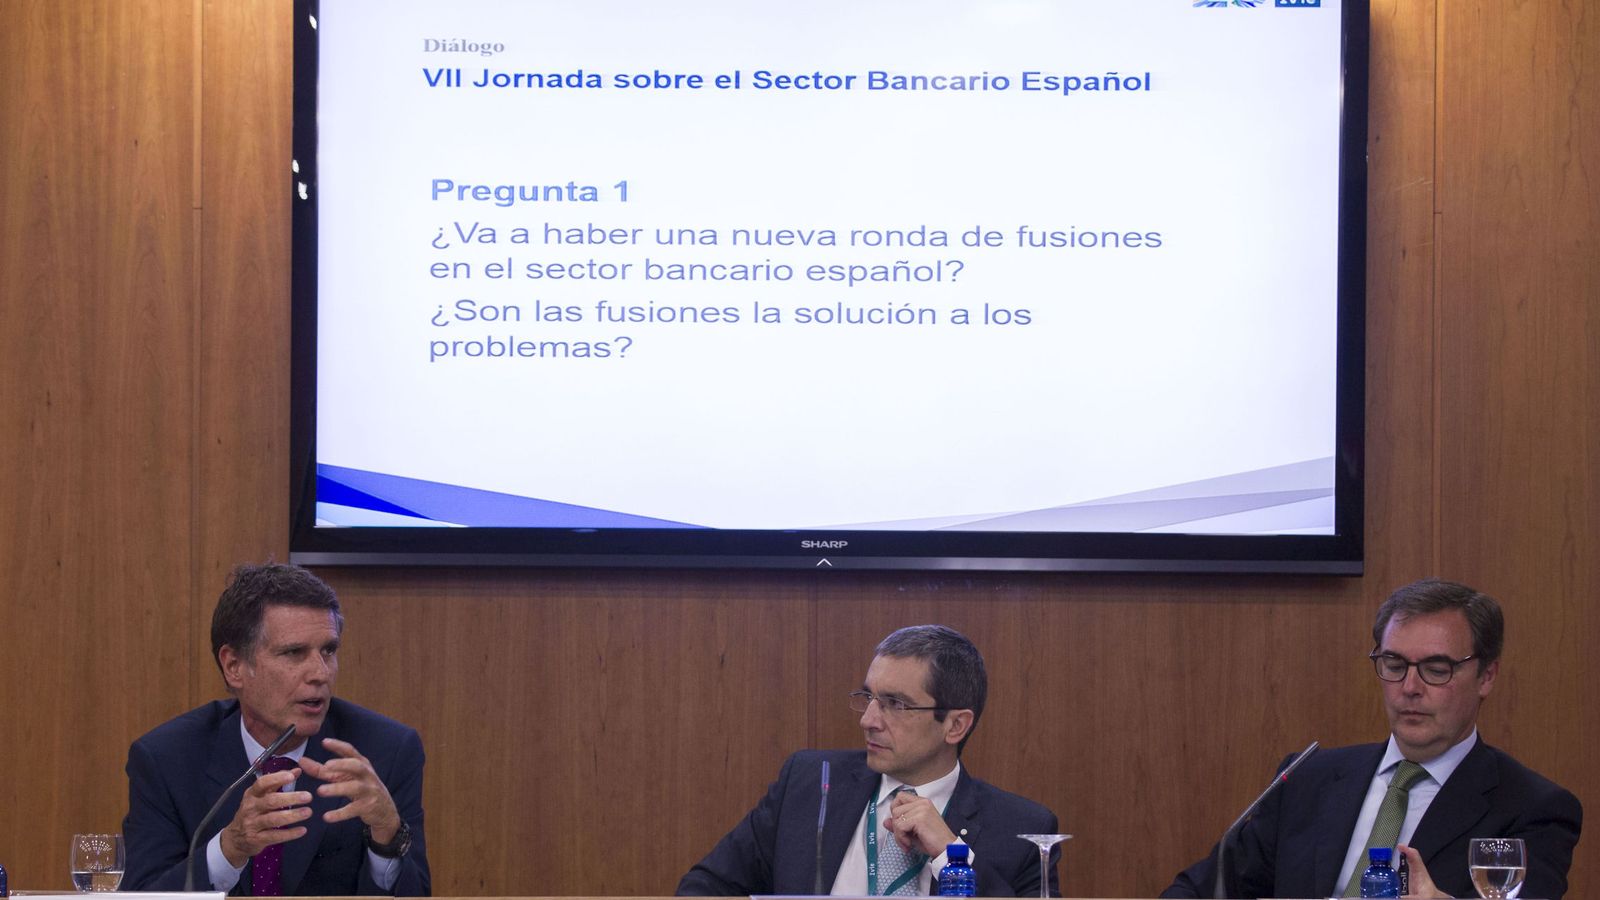 Foto: Guardiola (Sabadell), Maudos (IVIE) y Sevilla (Bankia), este miércoles en el foro sobre rentabilidad bancaria en Valencia.